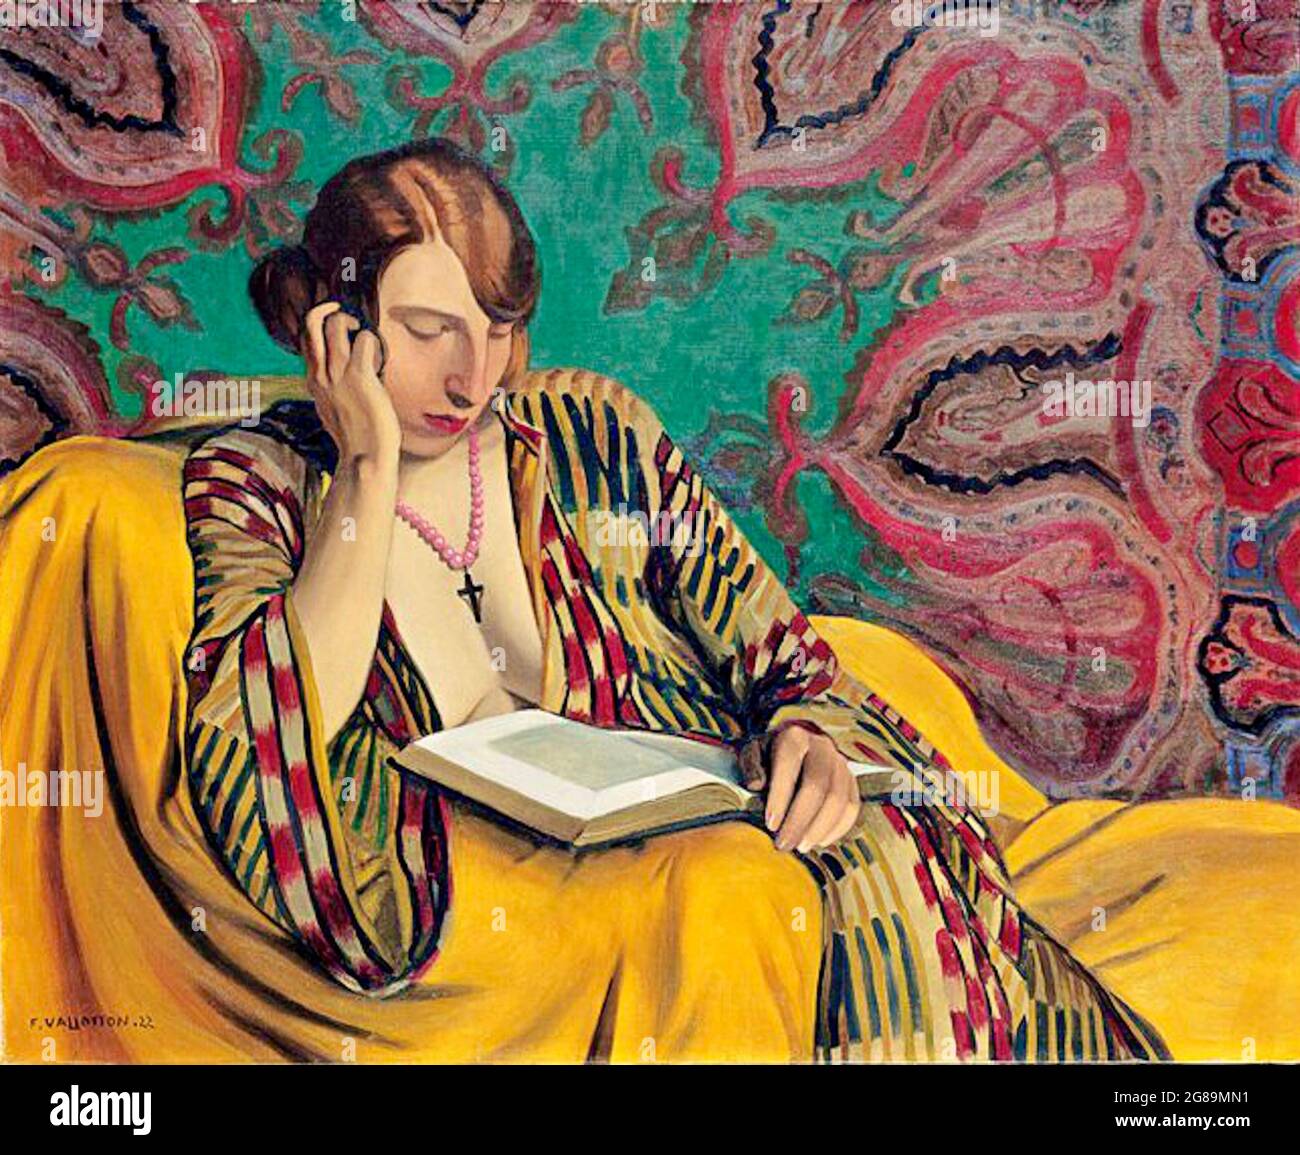 Félix Vallotton Kunstwerk mit dem Titel La Liseuse oder Reading Light. Eine sitzende Frau liest ein Buch. Die Wände sind mit einer verzierten Tapete im Mandala-Stil geschmückt. Stockfoto